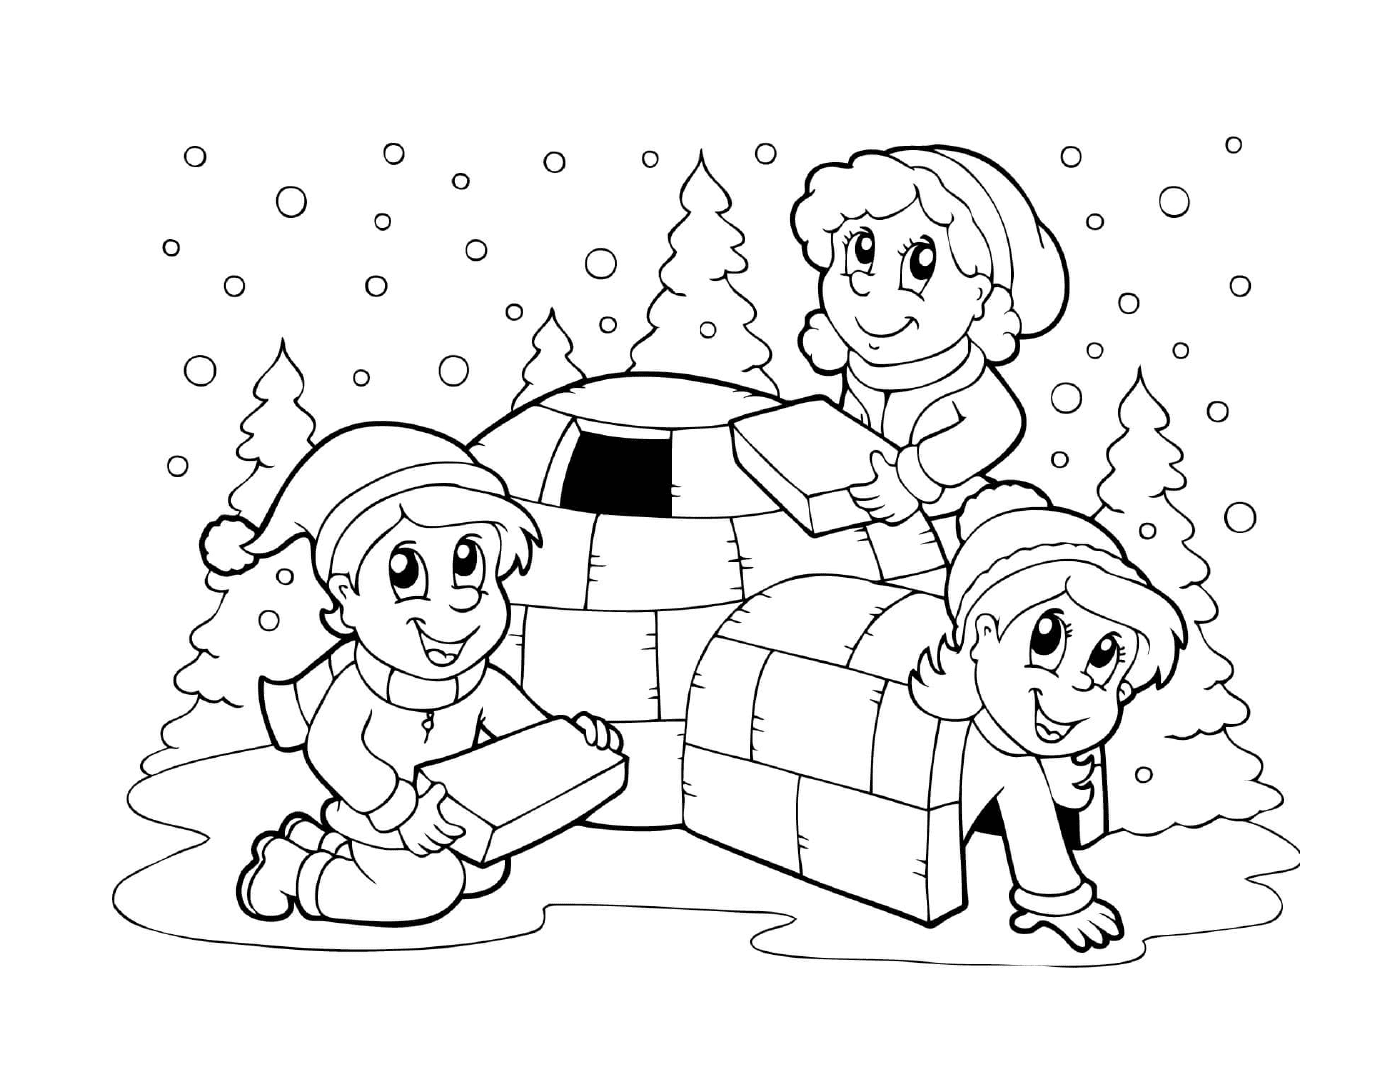  I bambini costruiscono un igloo in inverno 